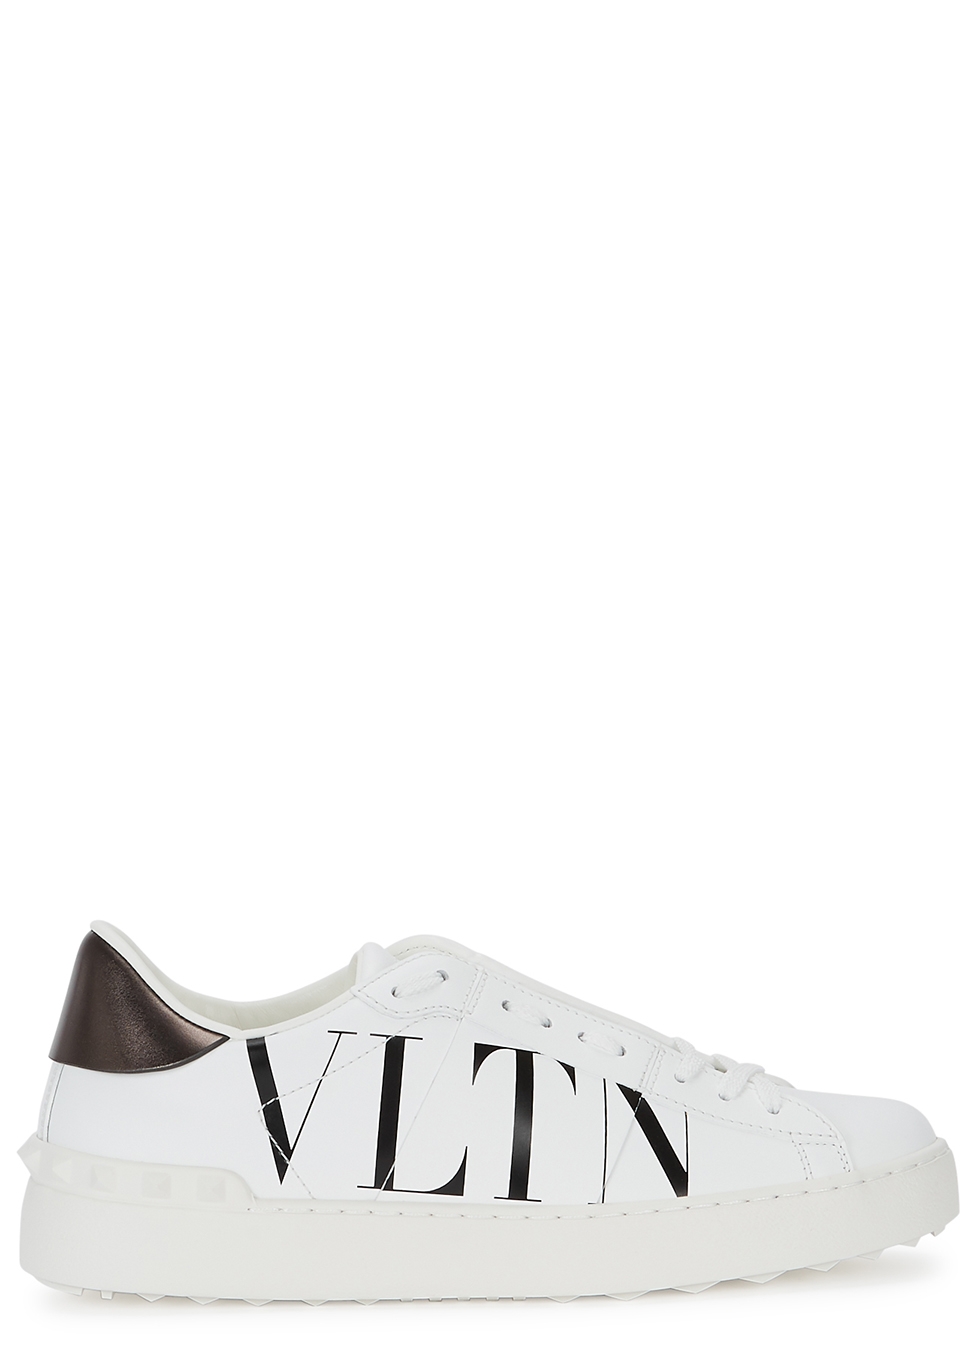 Valentino Garavani Open white leather sneakers